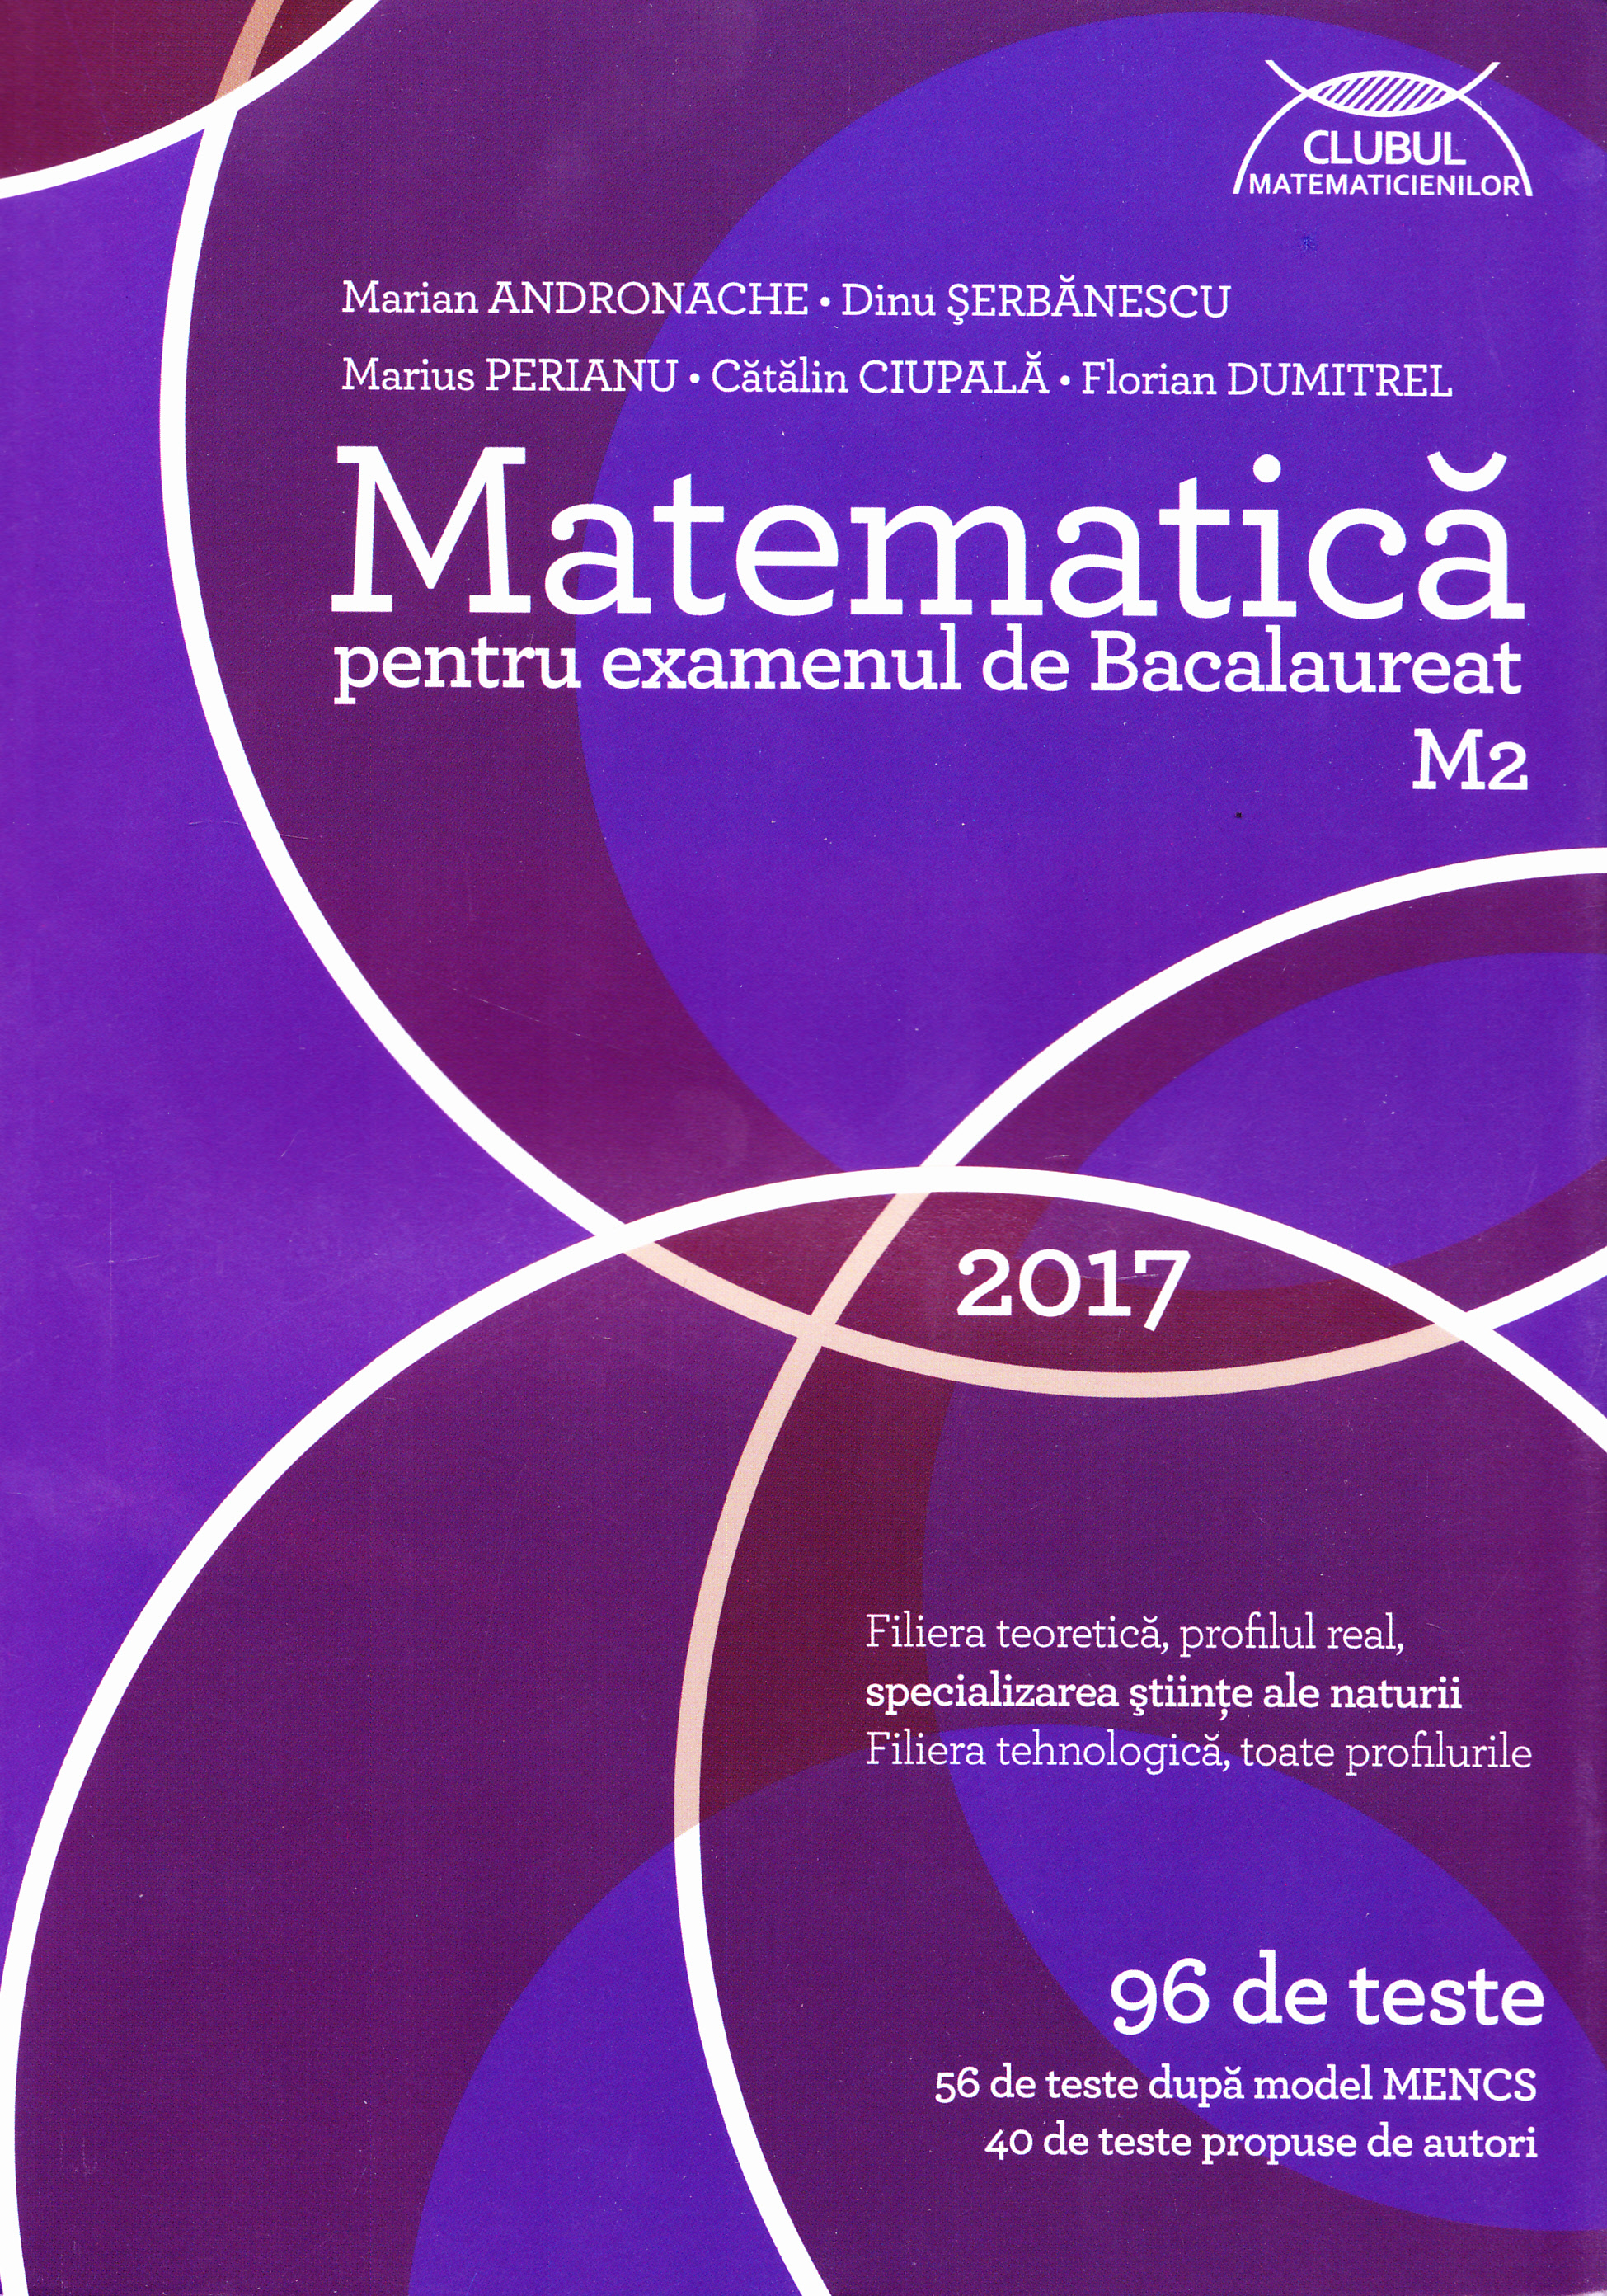 Matematica M2 pentru examenul de Bacalaureat: 96 de teste - Marian Andronache